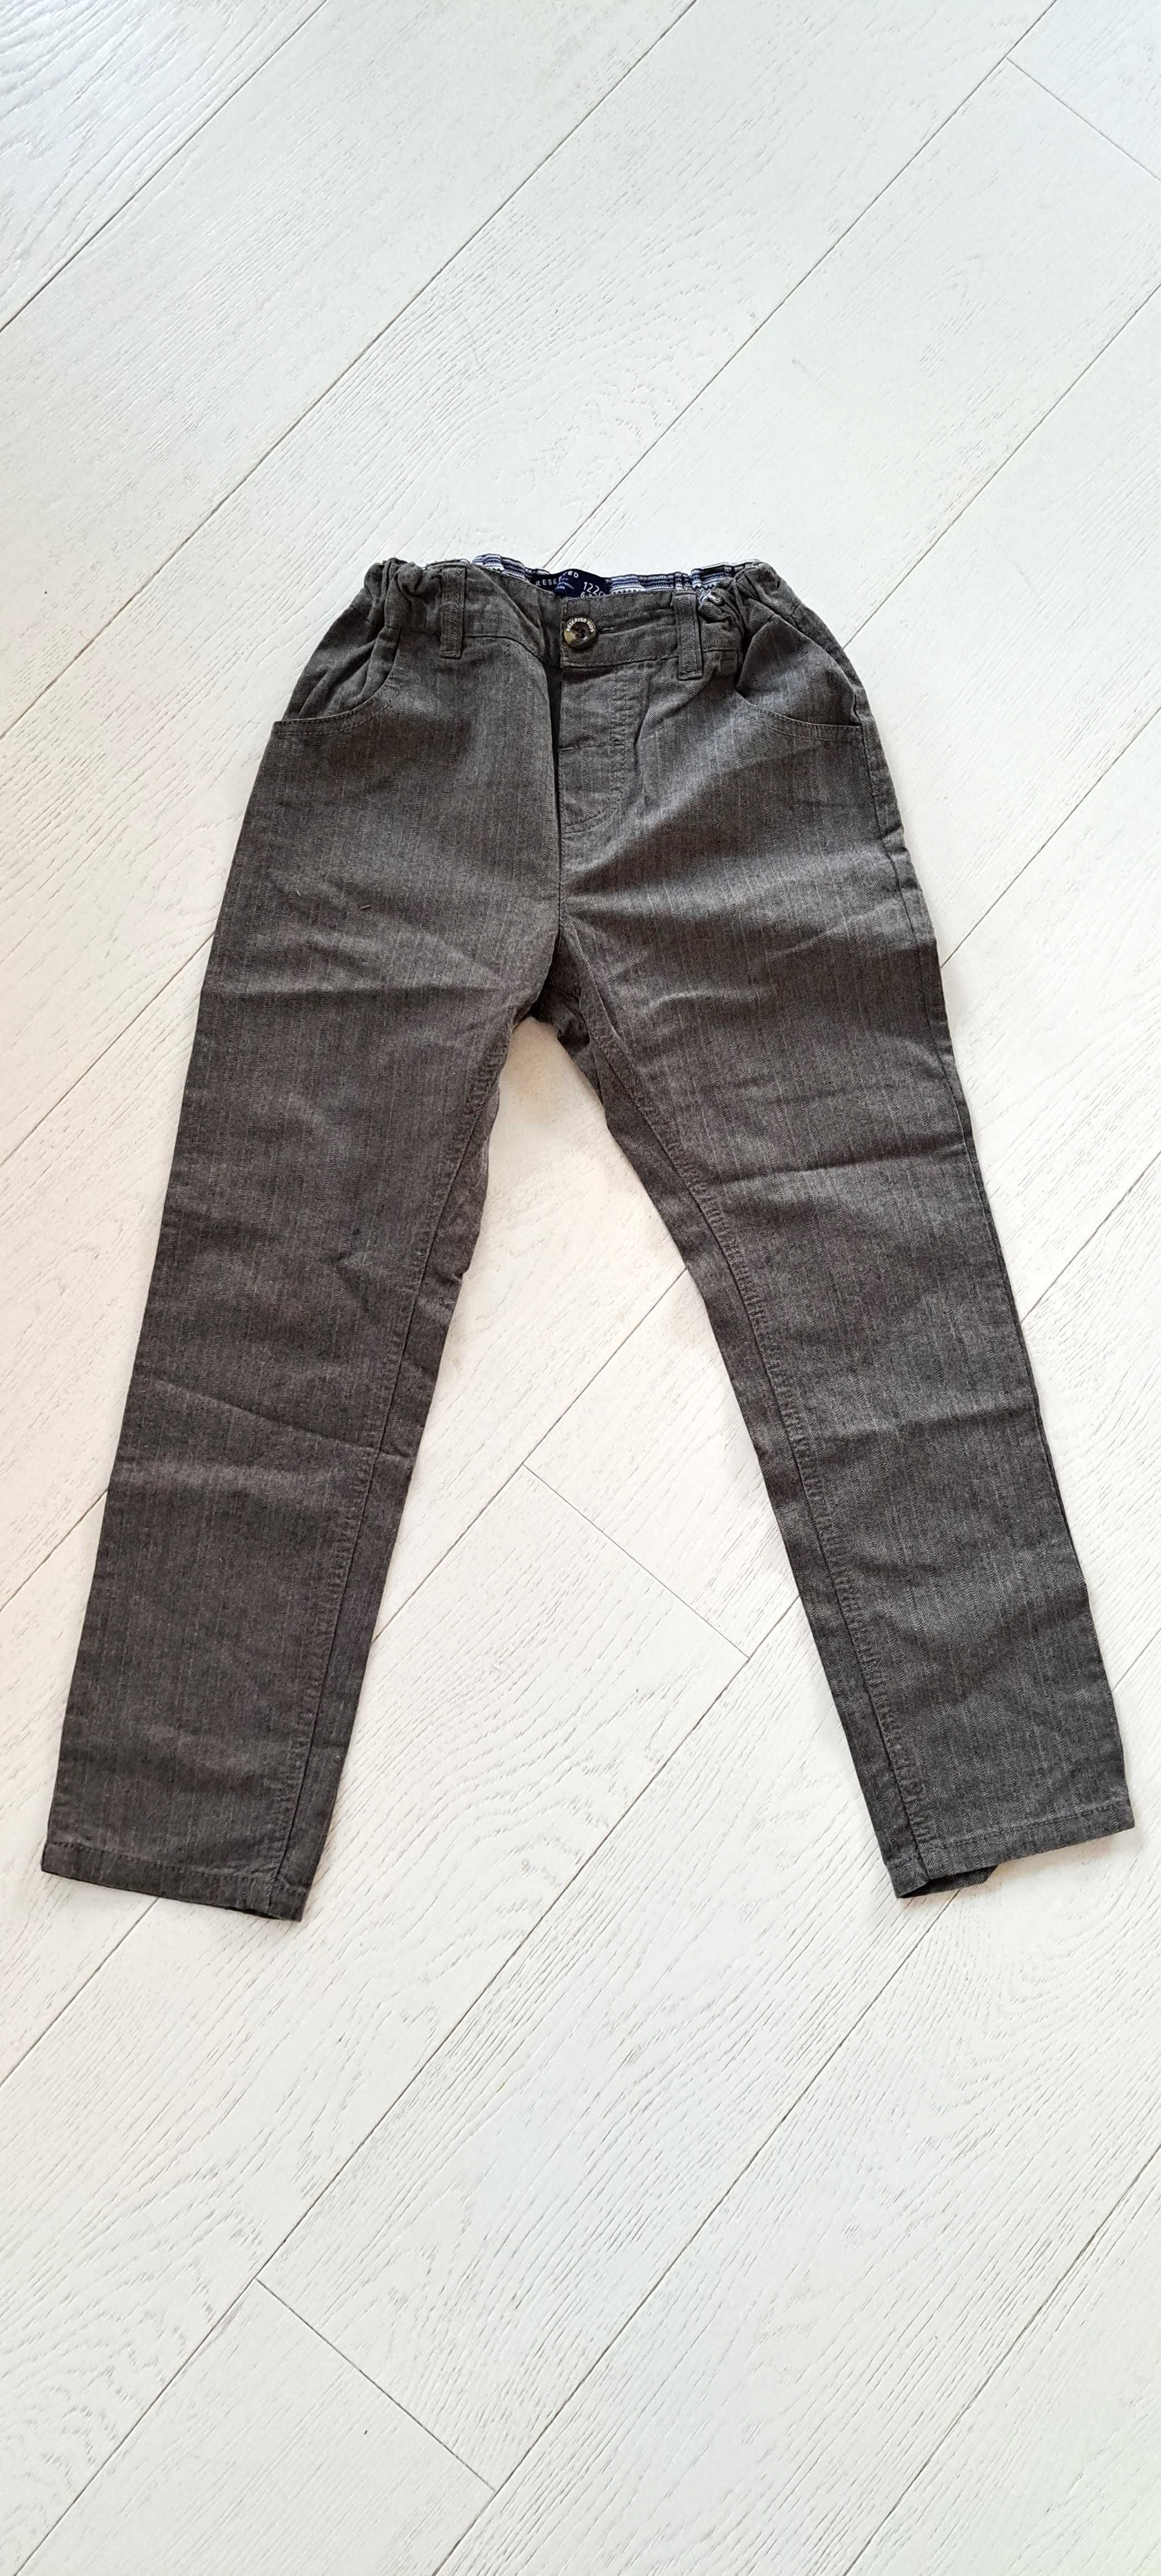 Chłopięce eleganckie spodnie jodełka RESERVED, r. 122 cm, 6-7 lat